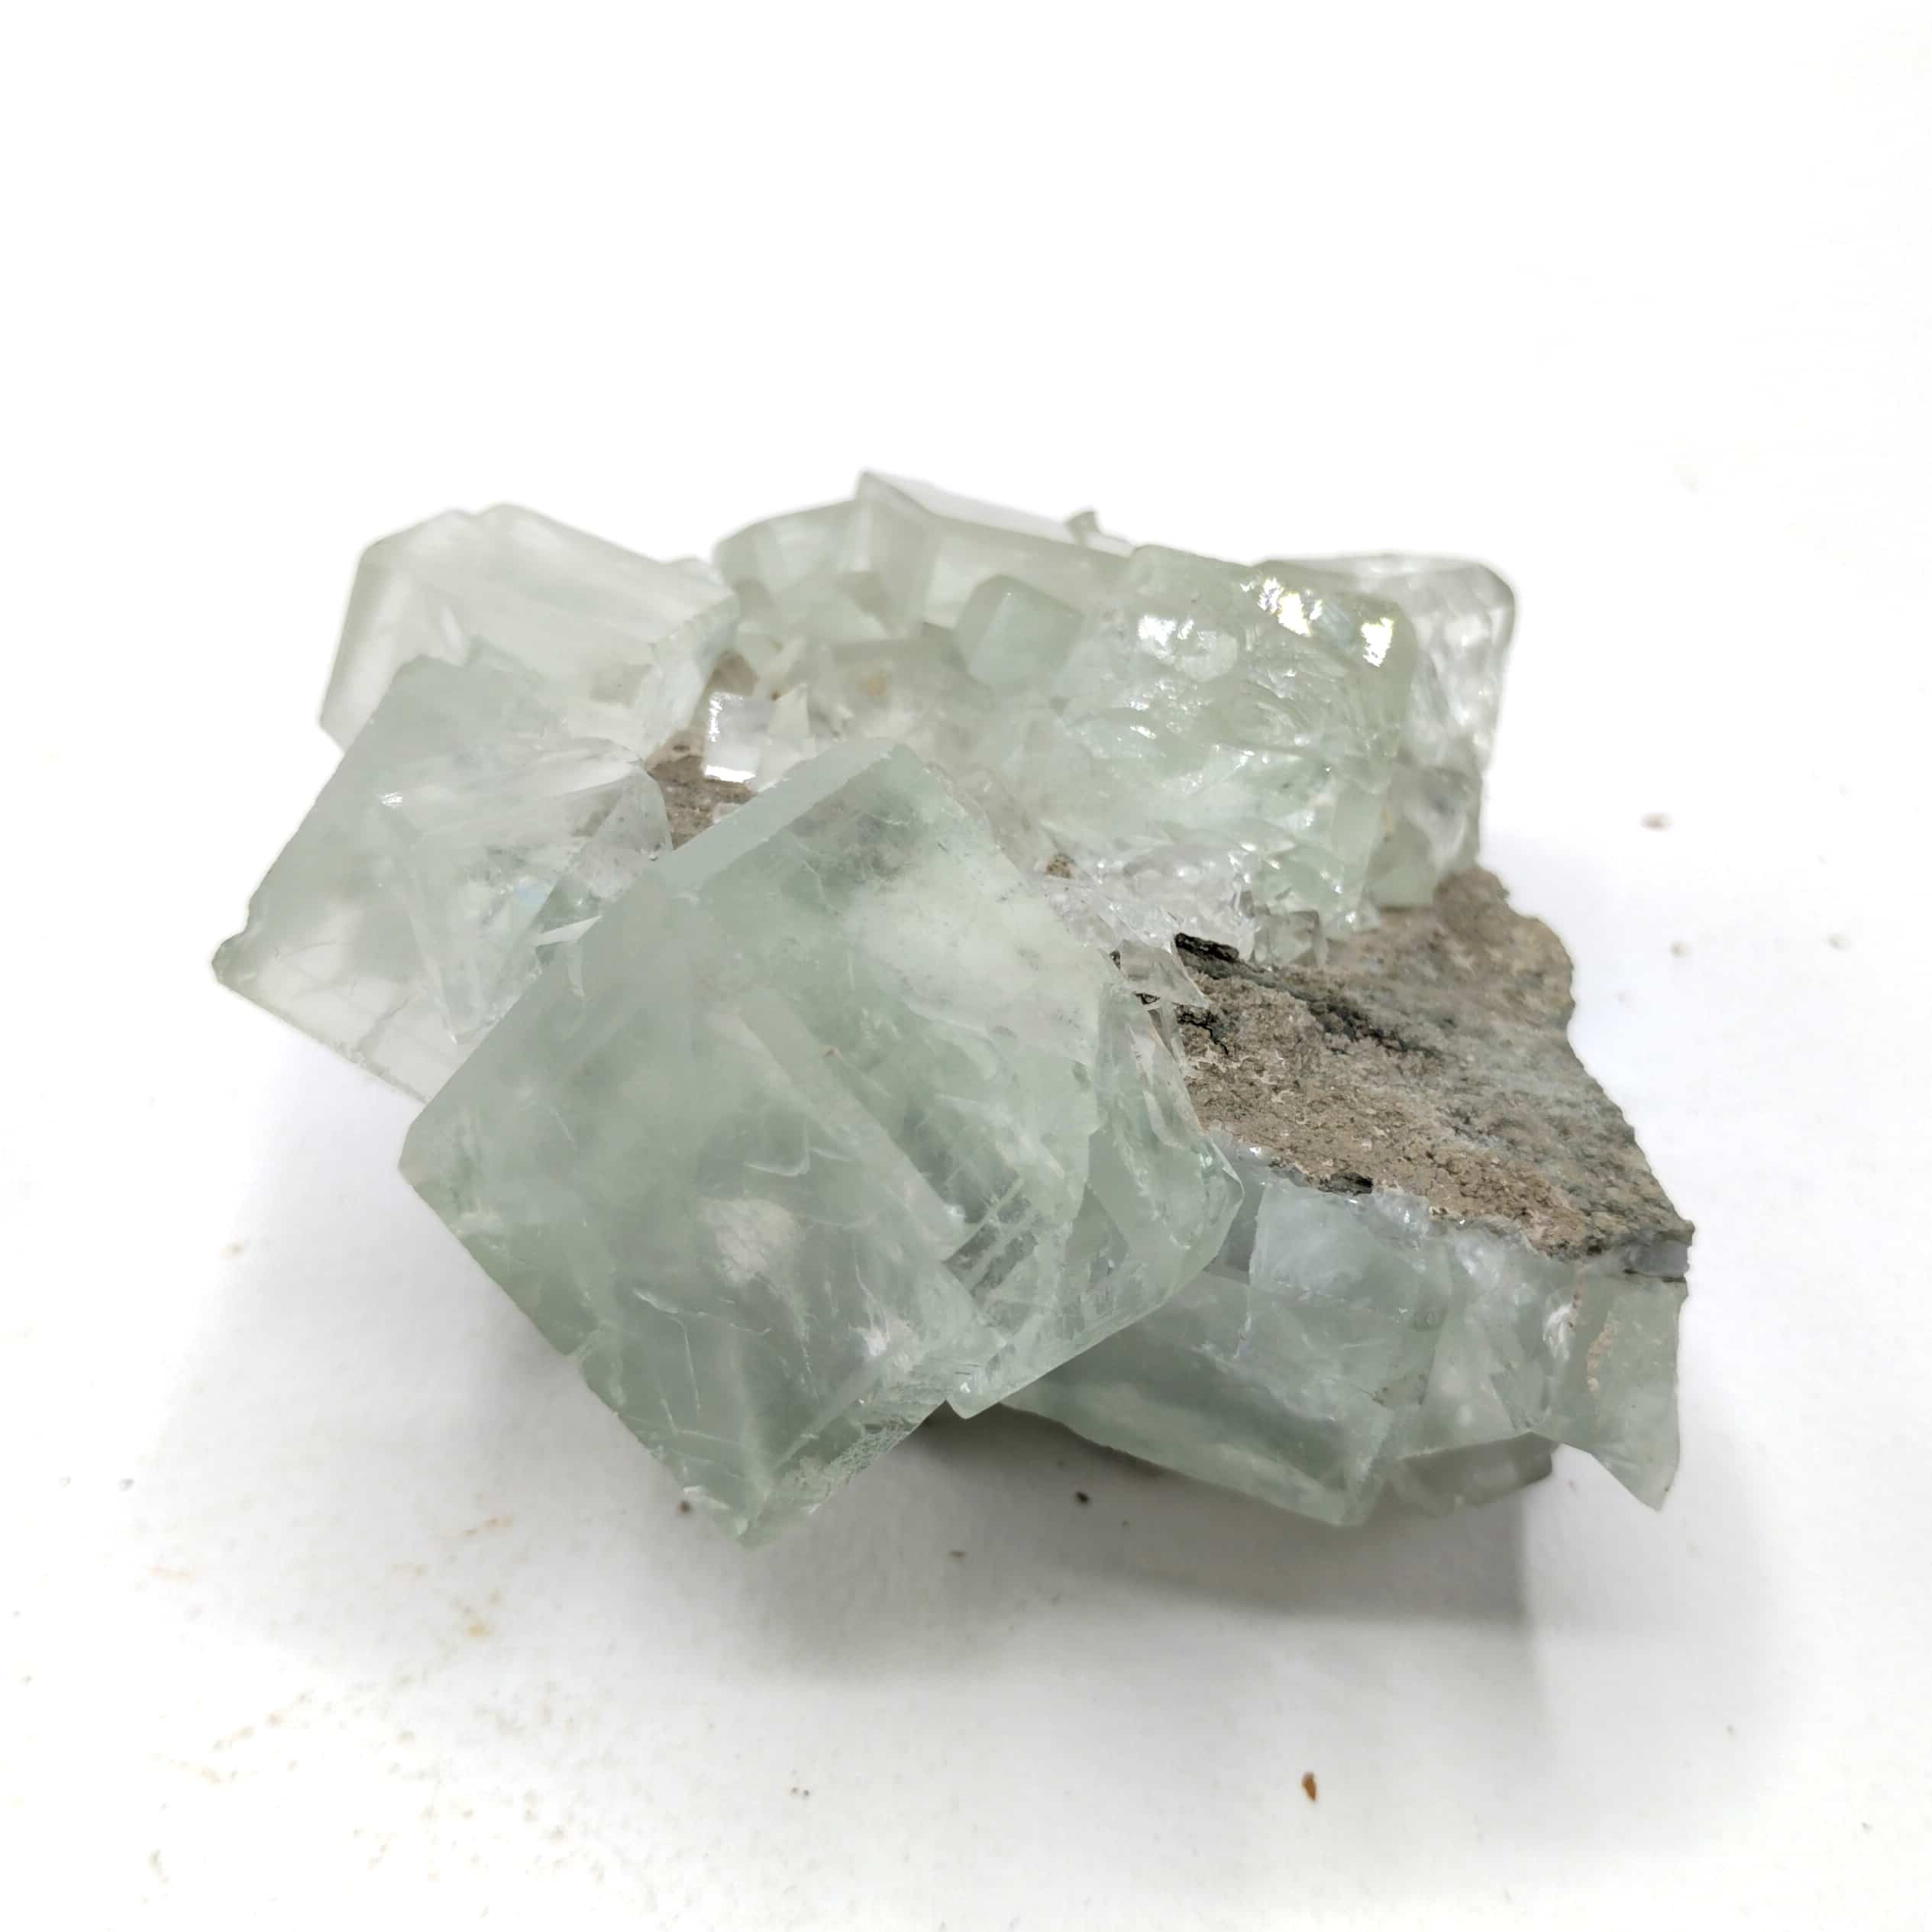 Fluorite (Fluorine), Xianghuapu, Hunan, Chine.